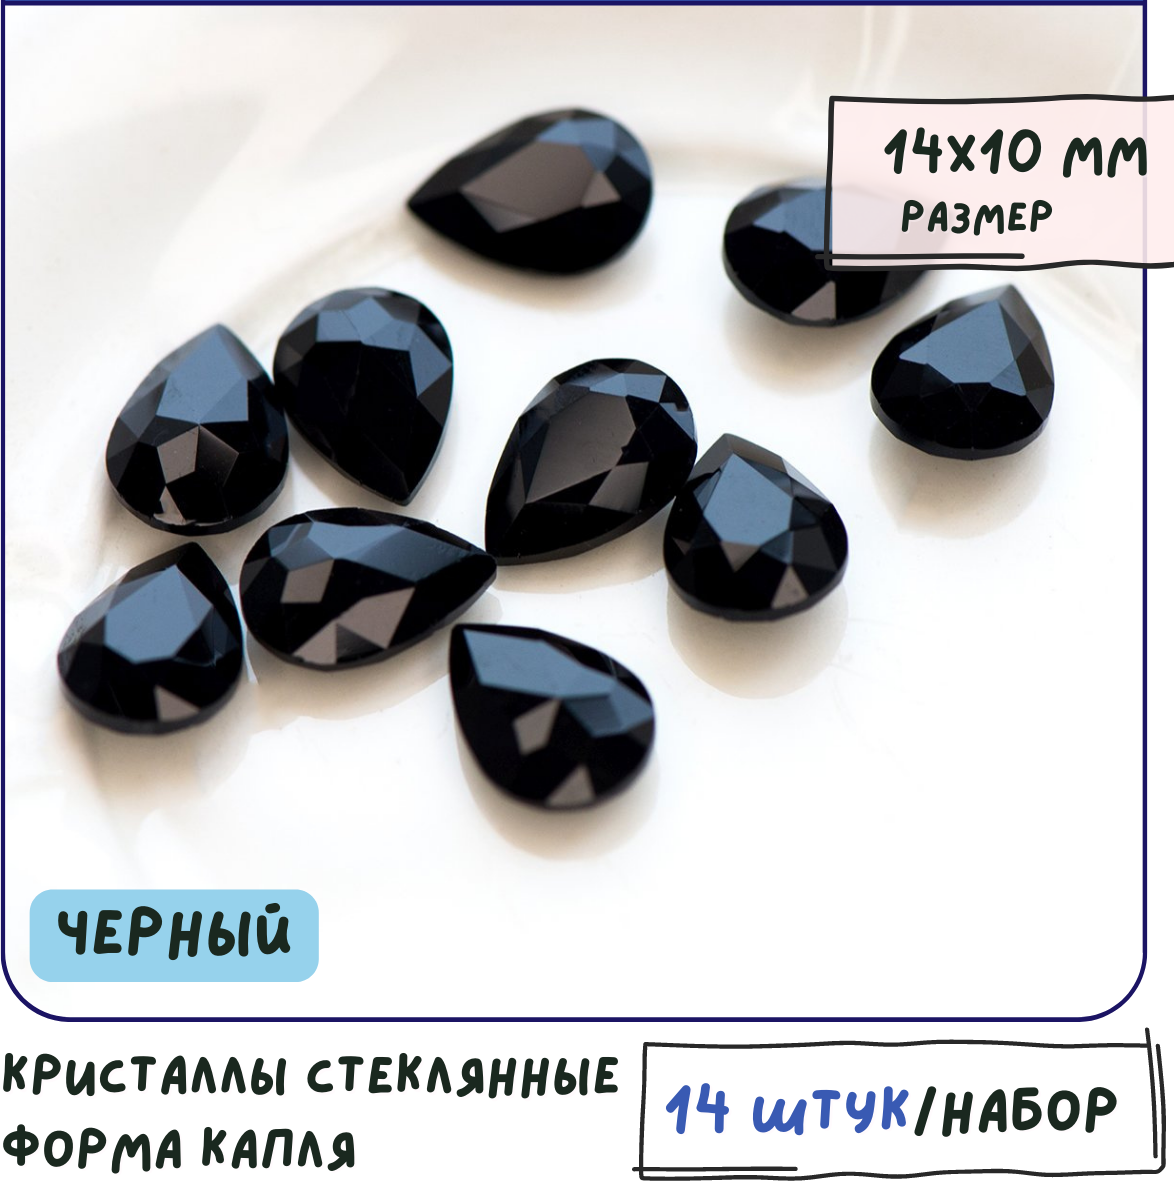 Декоративные кристаллы для рукоделия стеклянные капля 14 шт размер 14х10 мм, цвет Jet - черный